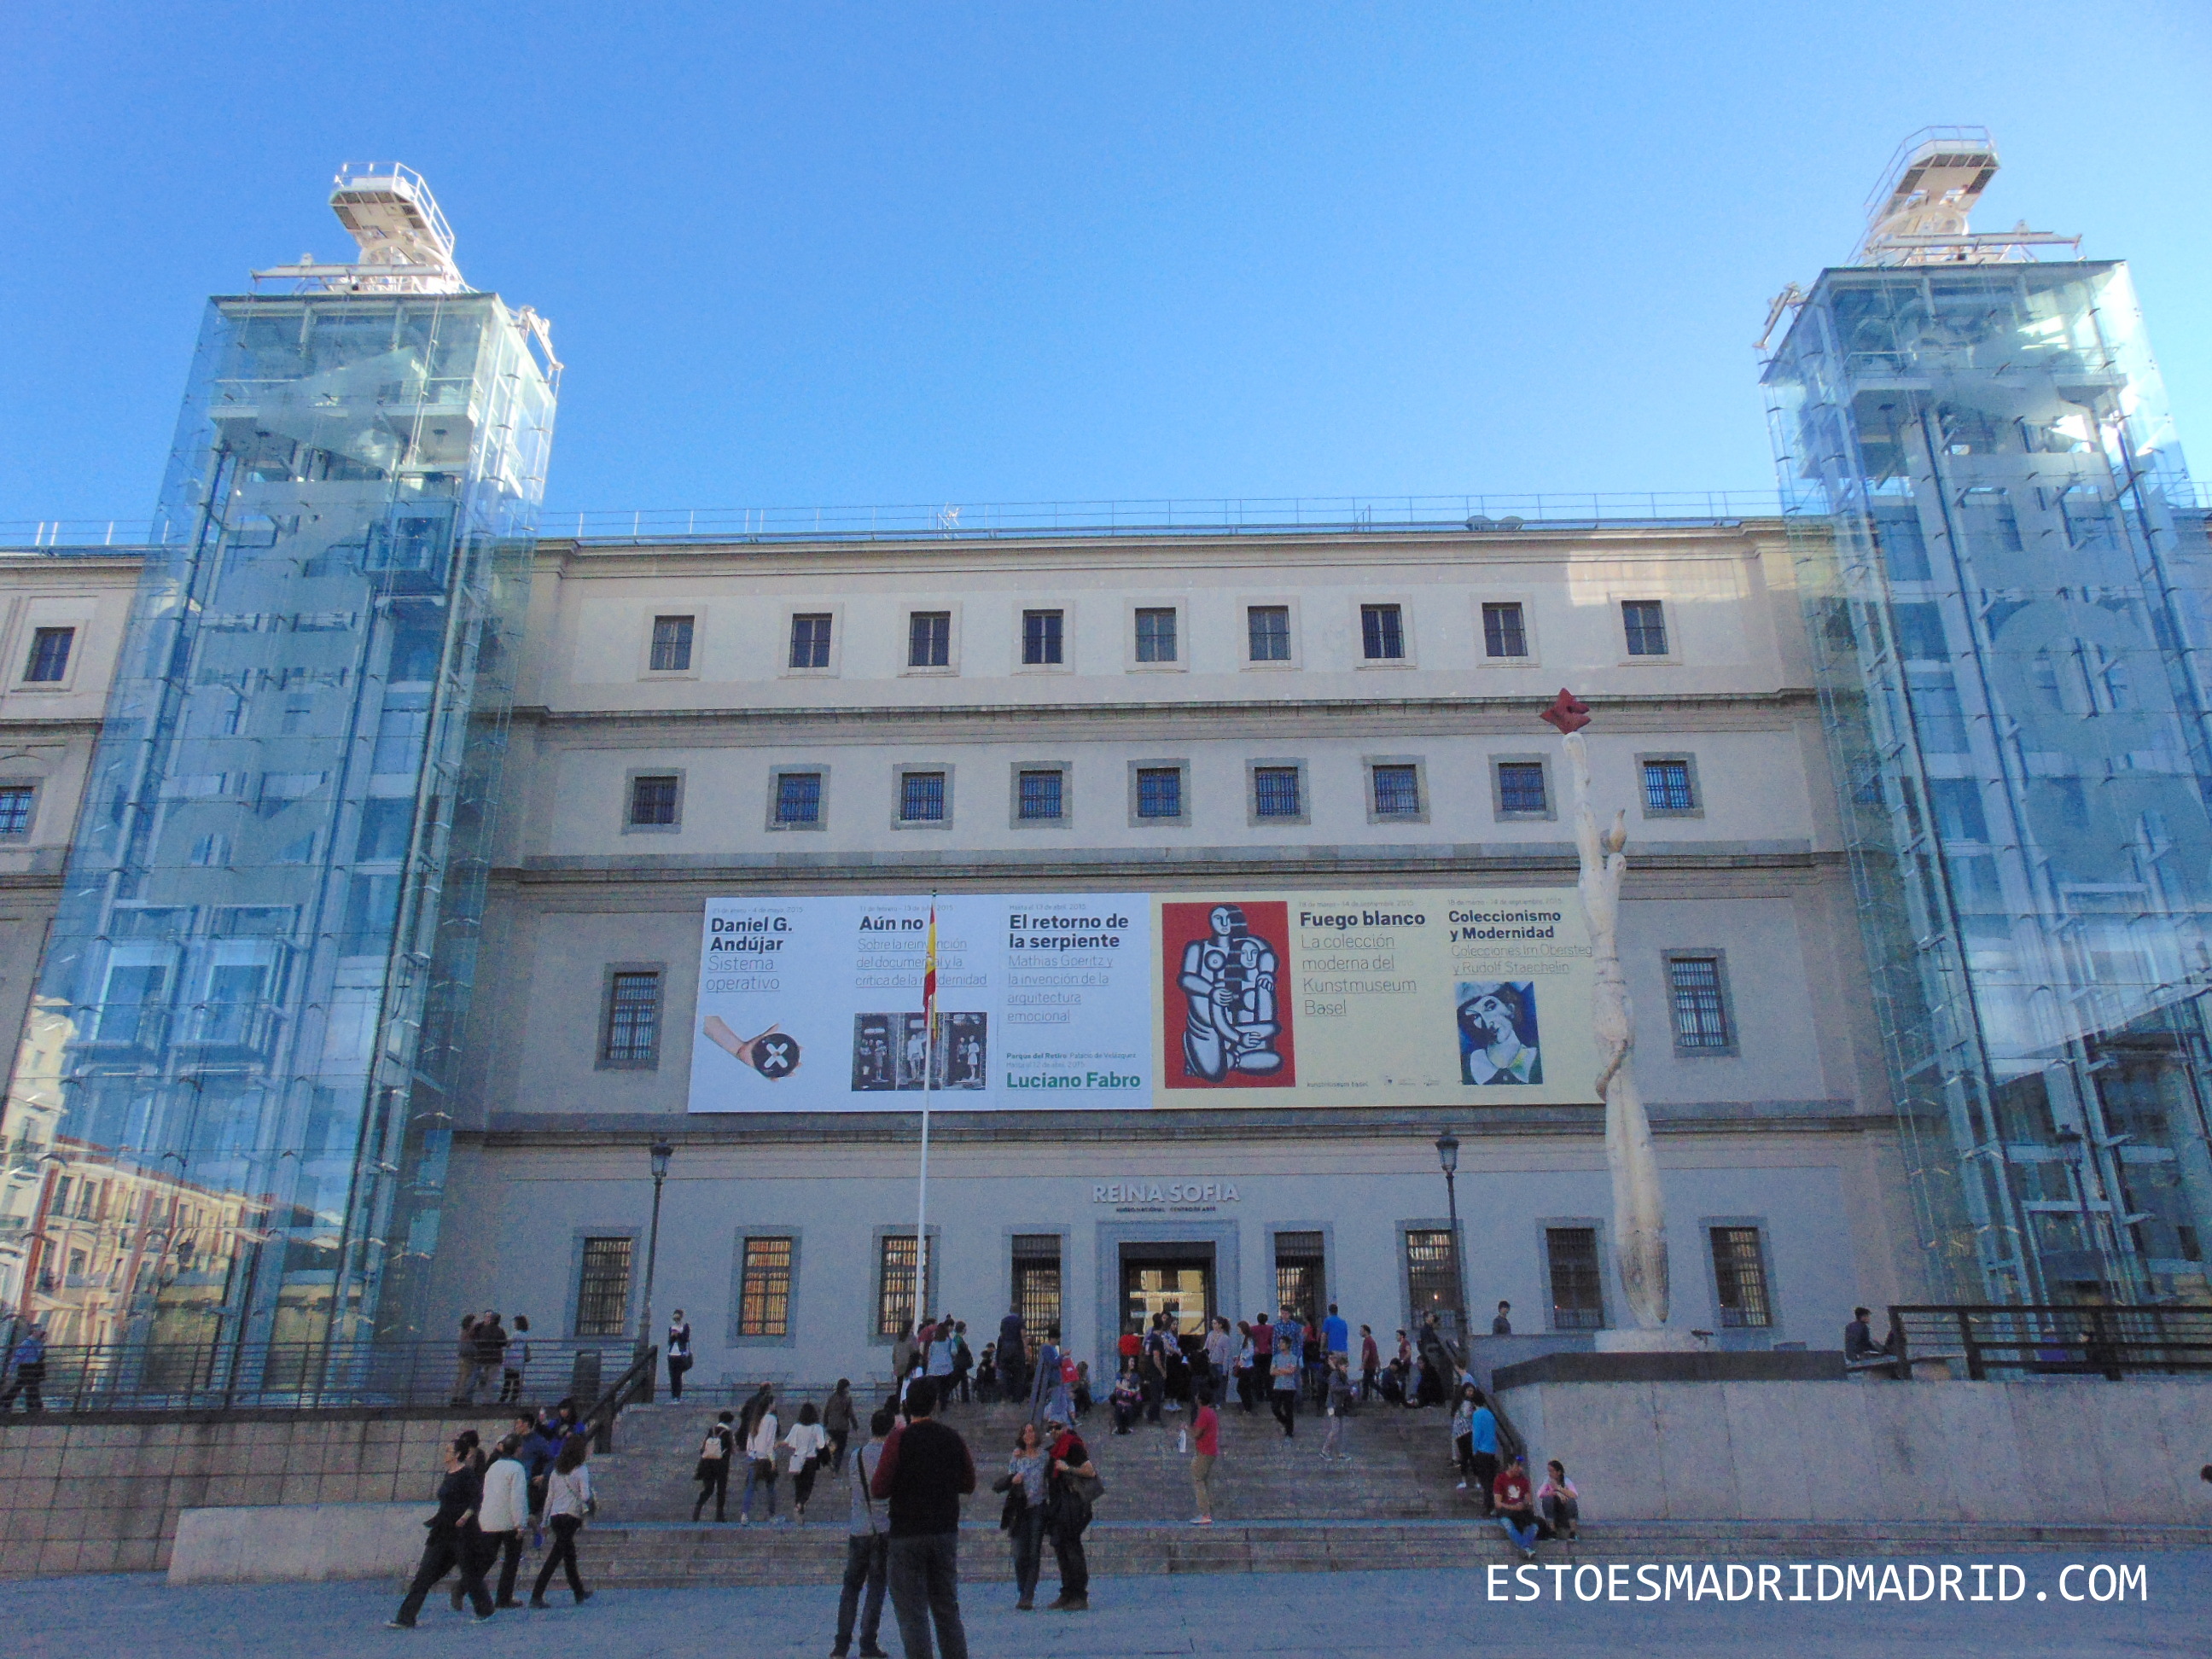 Entrada principal do Reina Sofía, com os famosos elevadores panorâmicos e a obra de MIró, à esquerda